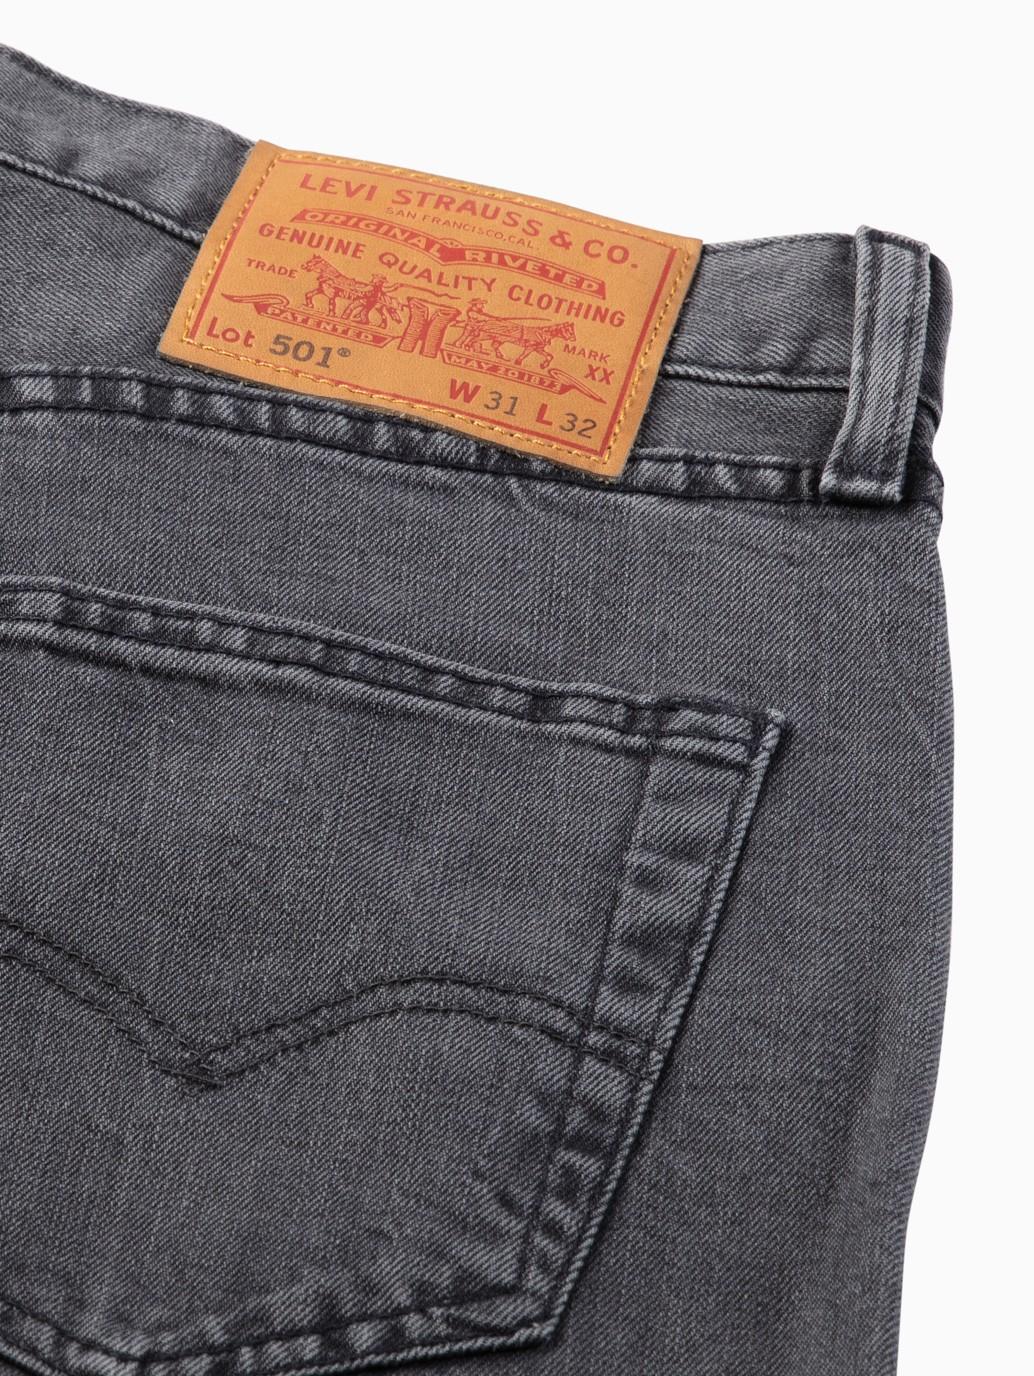 Buy Levi's® Men's 501® Original Jeans| Levi's® Official Online Store PH